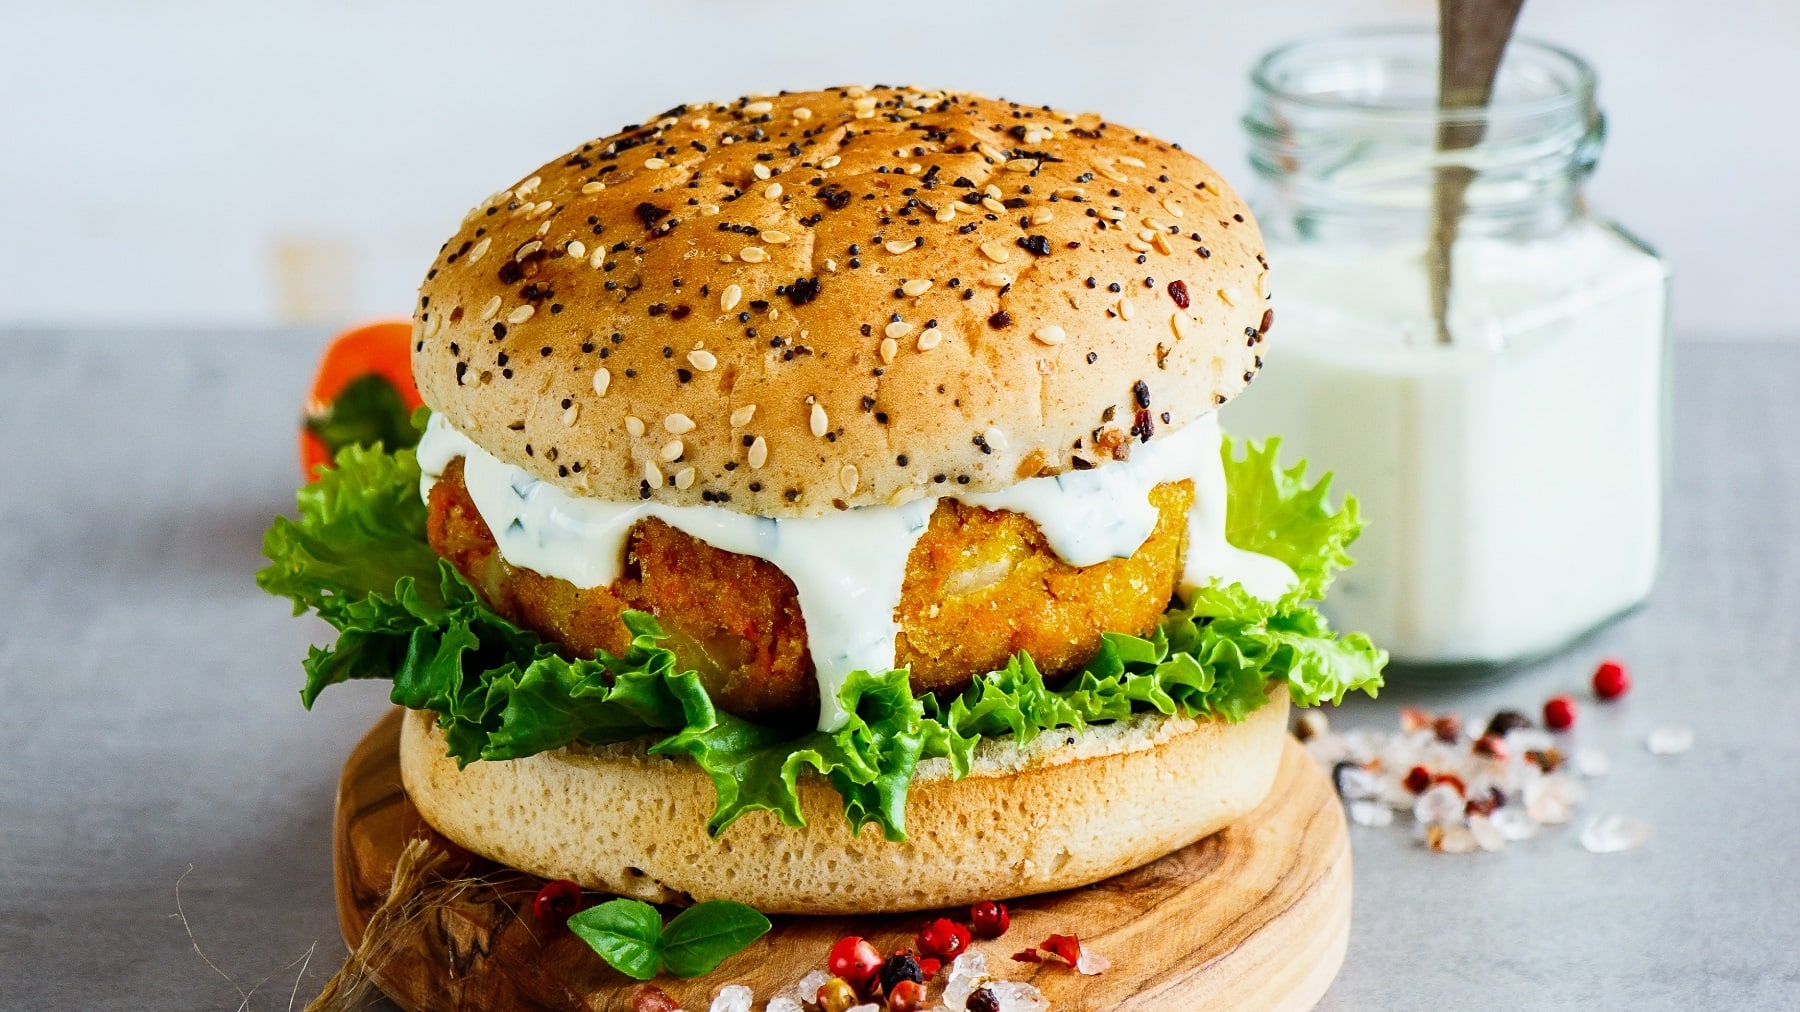 Ein veganer Burger mit Möhren-Hafer-Patty, Salat und weißer Sauce auf einem Holzbrett, dahinter steht ein Glas mit Mayo.